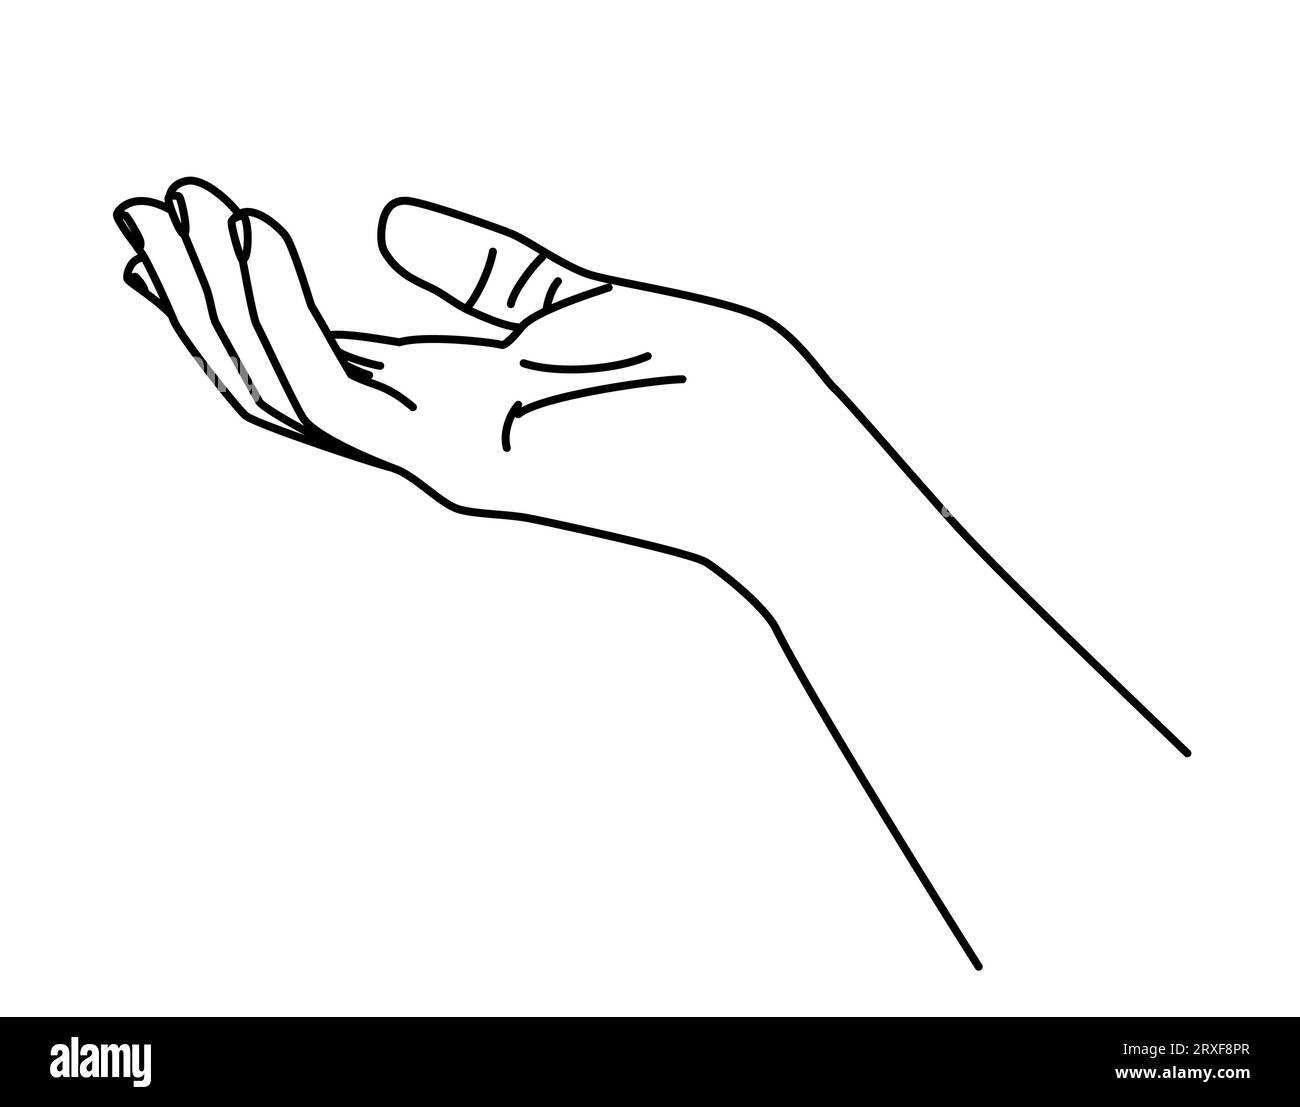 Dessin à la main tracé à la main. Tenir et donner un geste. Illustration vectorielle de style ligne mince, isolé sur fond blanc Illustration de Vecteur